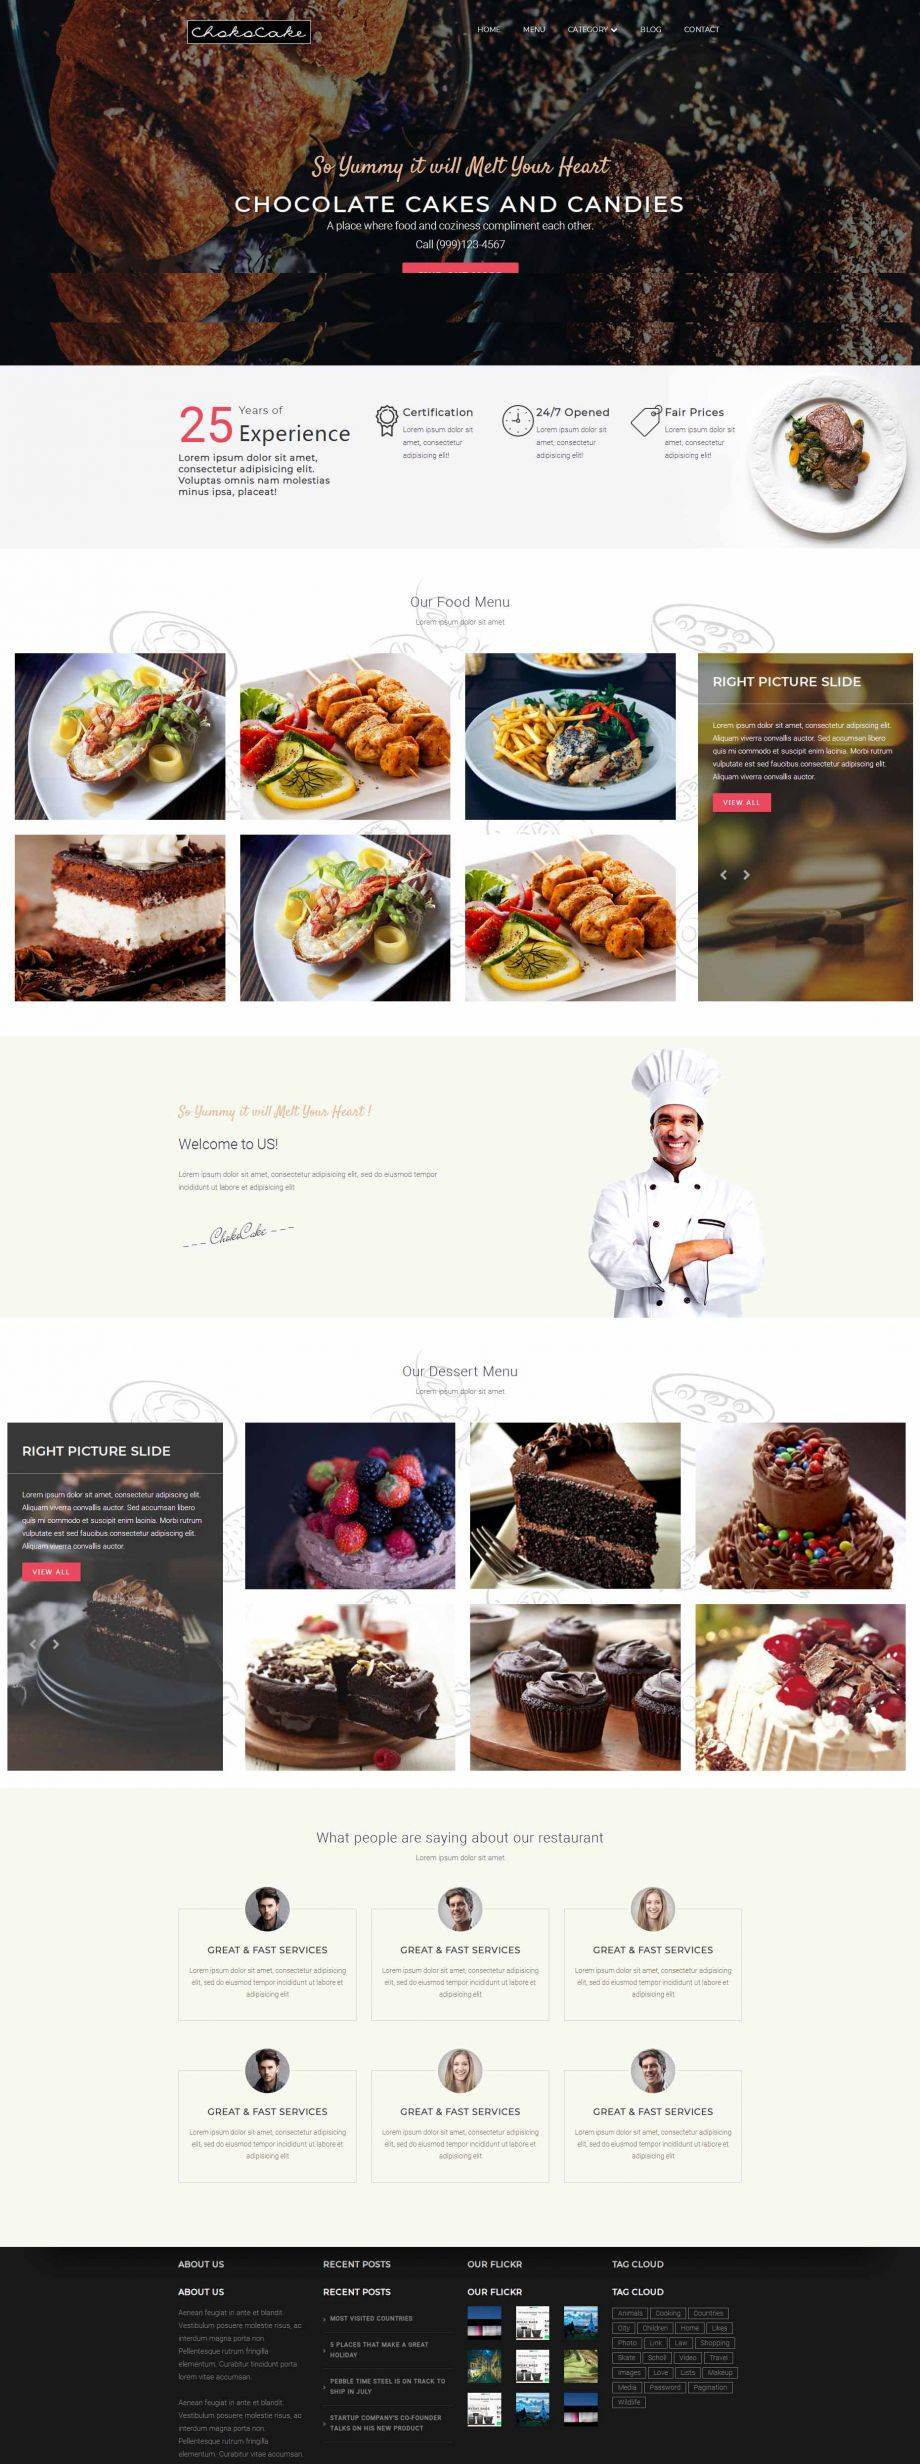 HTML5响应式商城西式美食甜品店网站模板